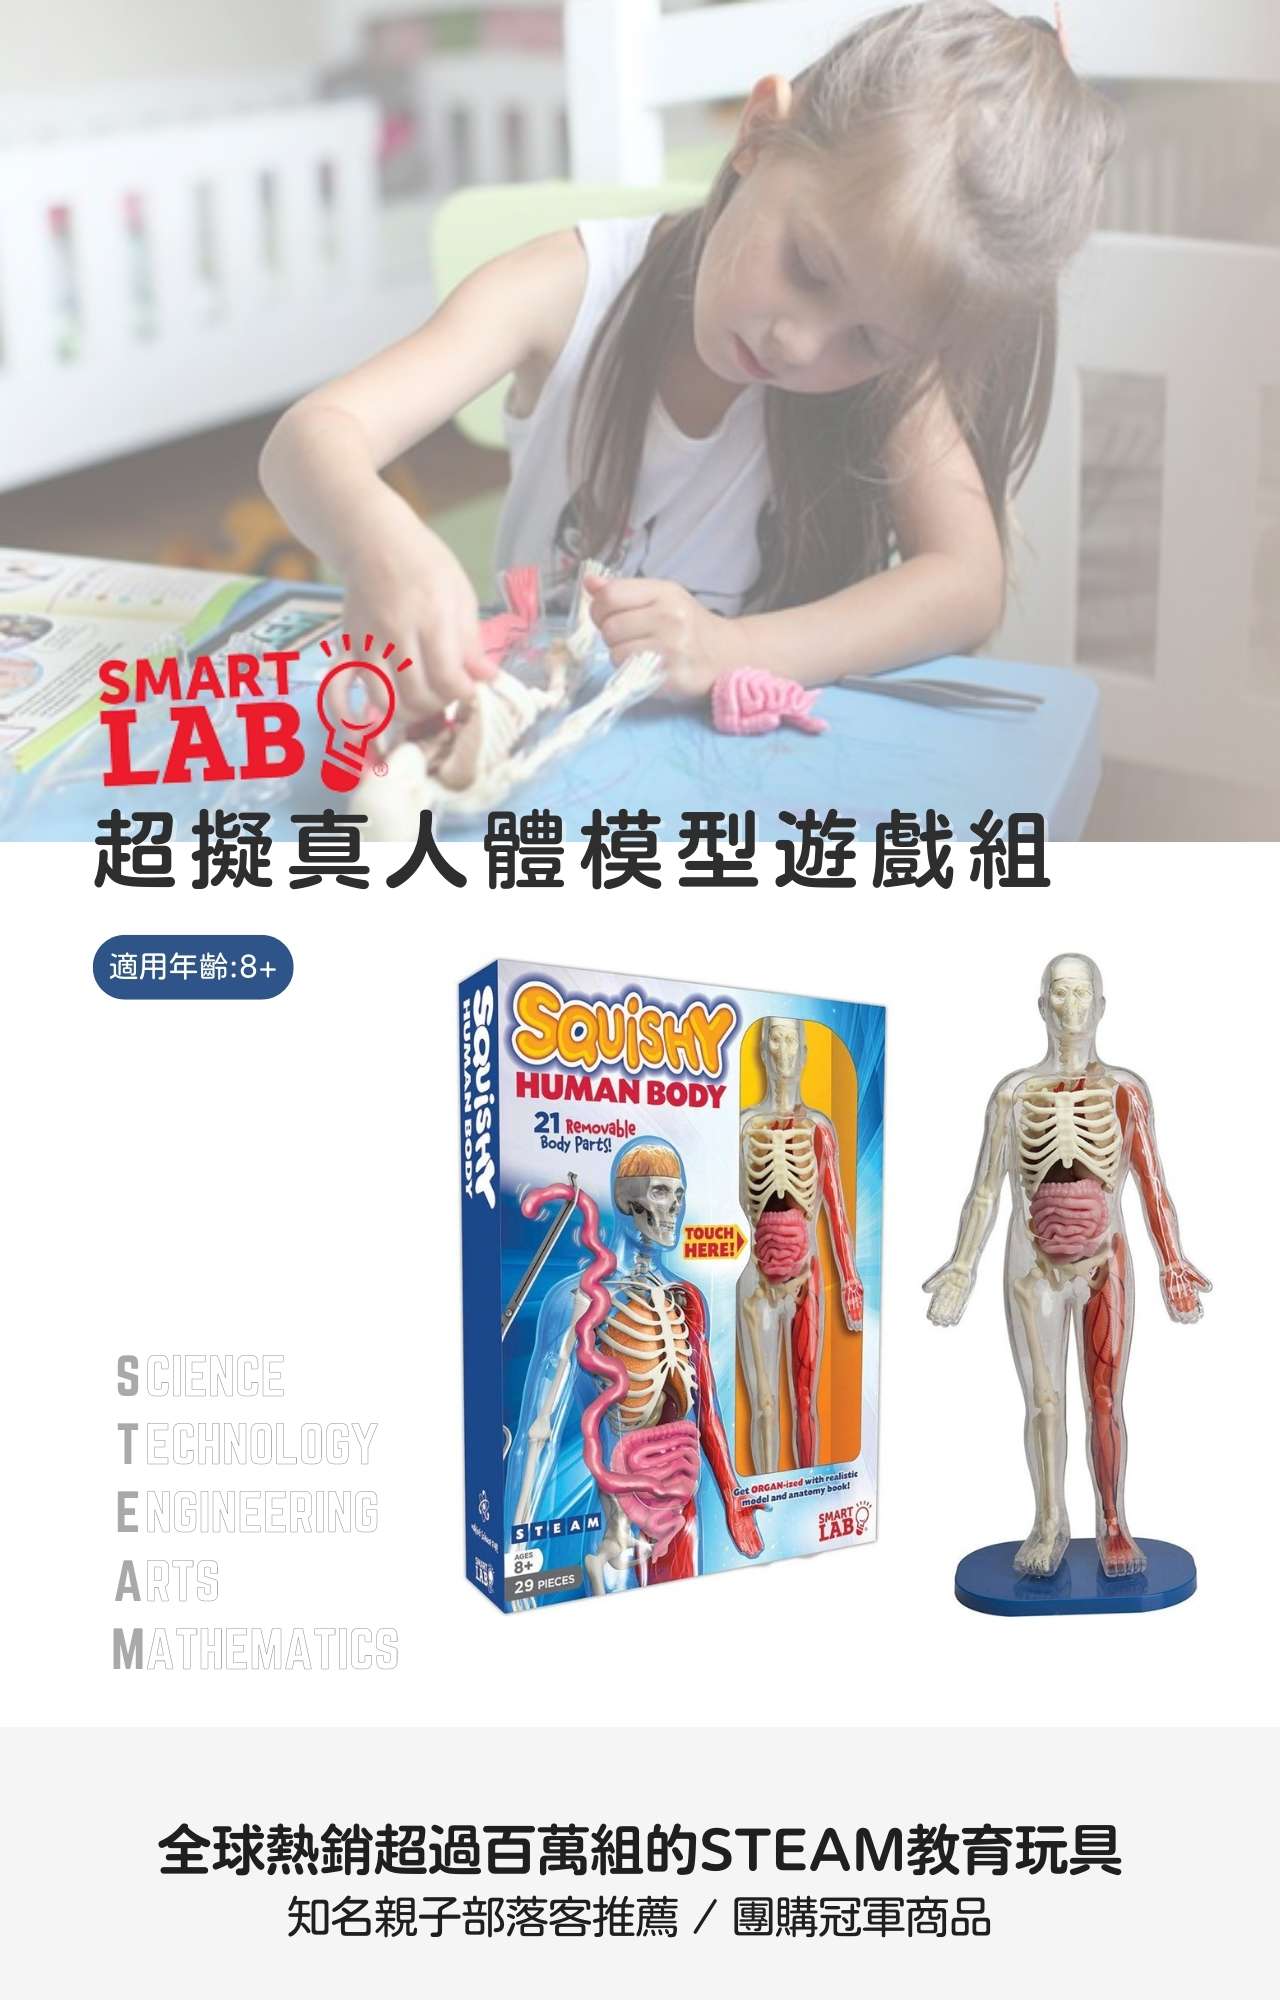 美國SmartLab 超擬真人體模型遊戲組_Squishy Human Body_產品說明 (1)